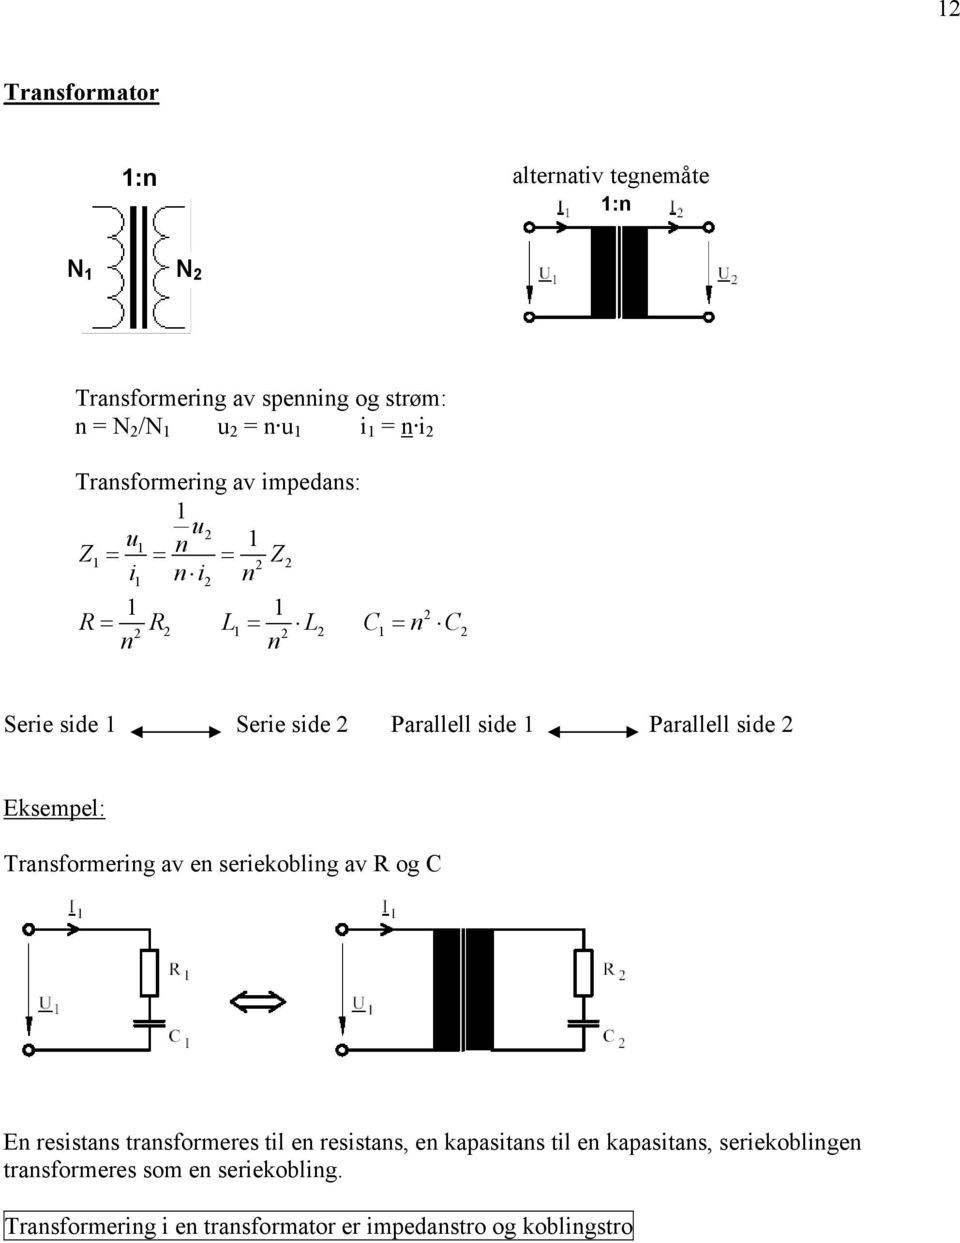 Transforering av en seriekobling av R og C En resistans transforeres til en resistans, en kapasitans til en